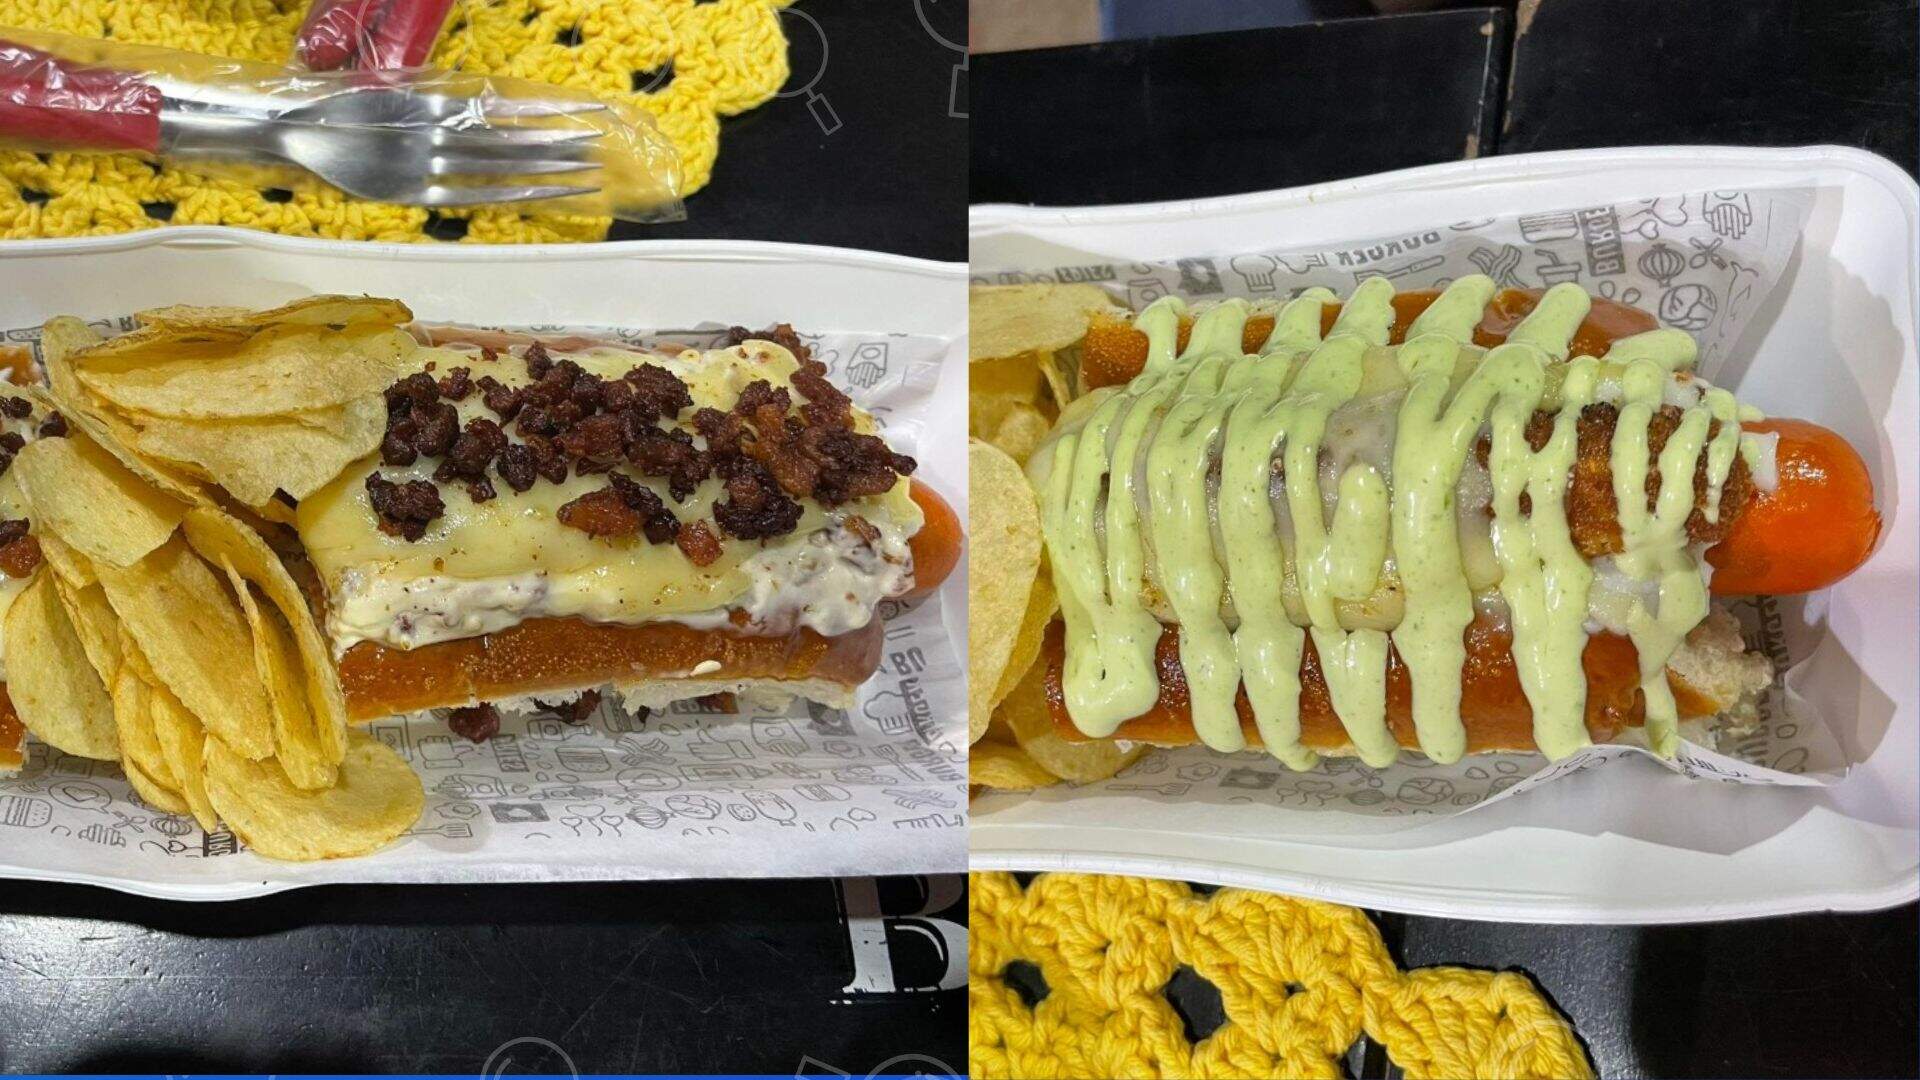 Deu Bom Dogueria chega para provar que hot dog vai além de salsicha e molho  - Conteúdo Patrocinado - Campo Grande News